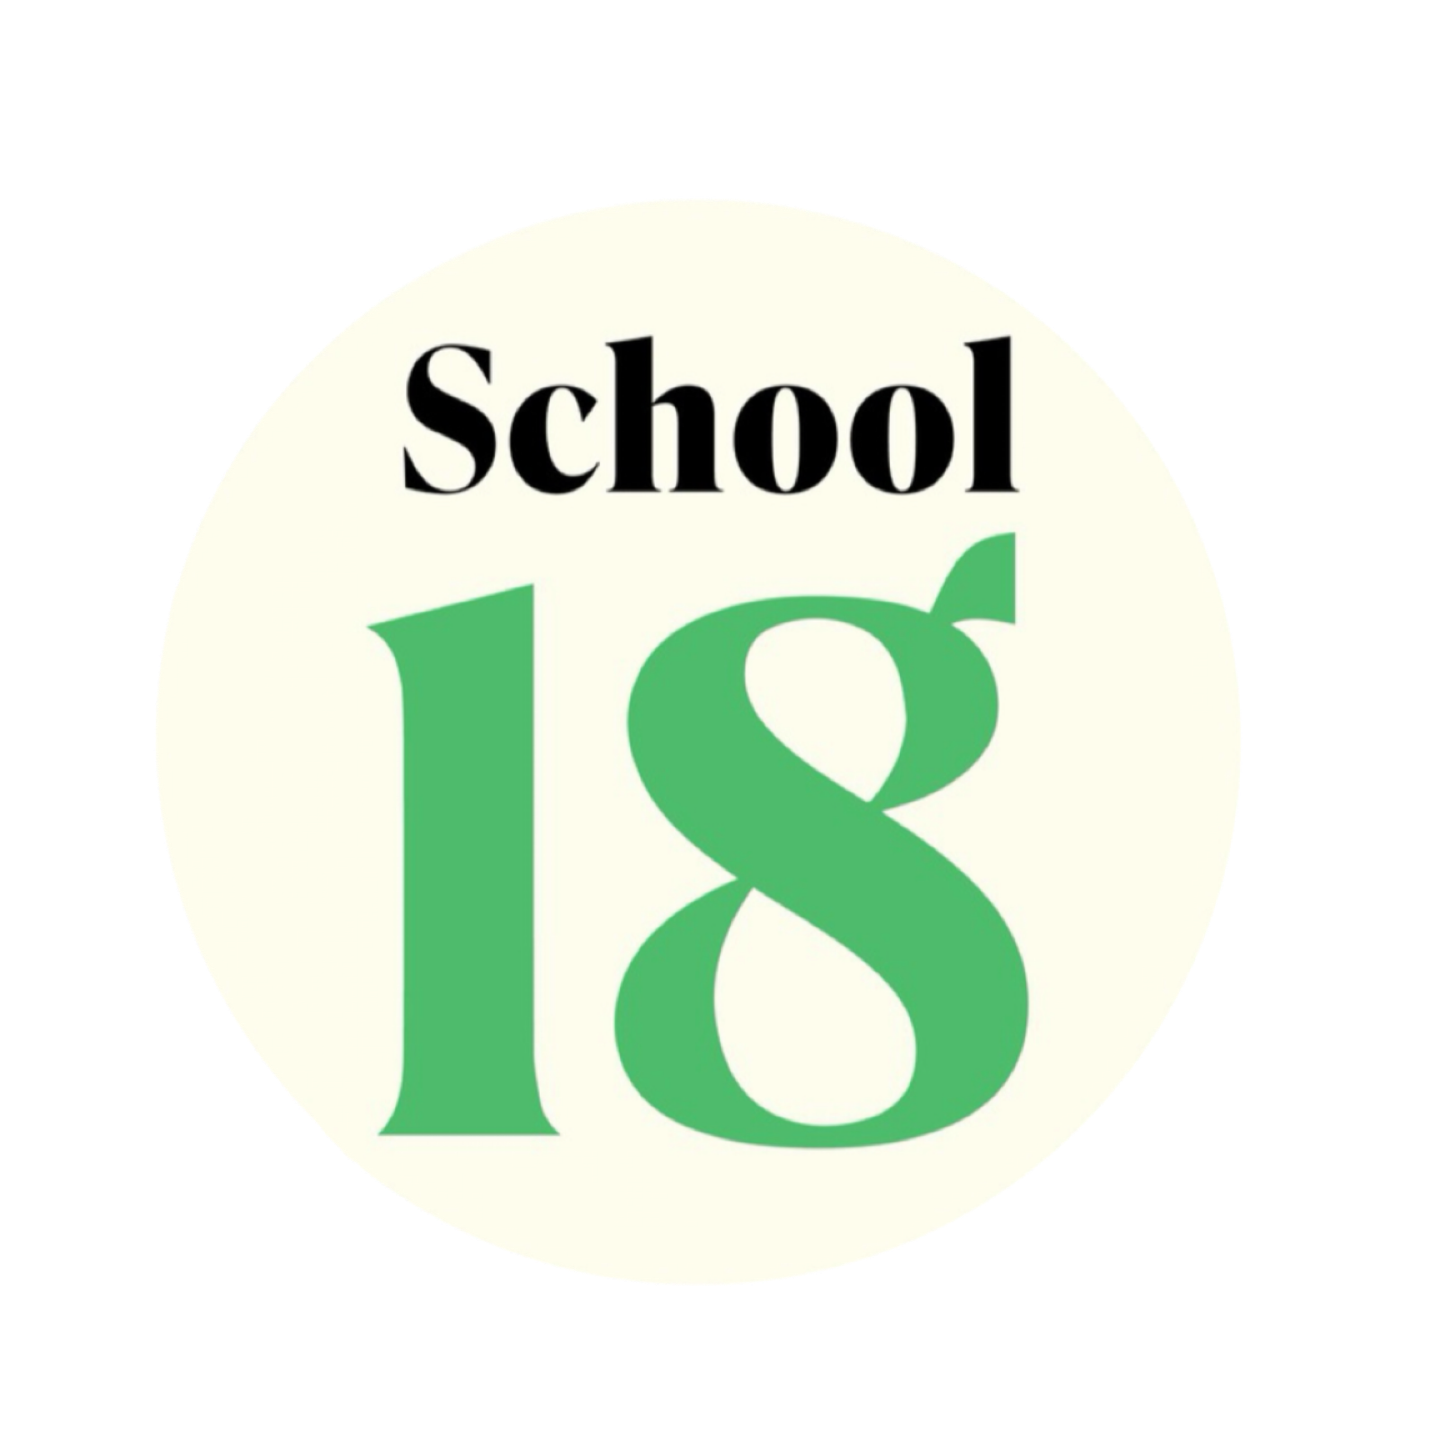 18 Школа